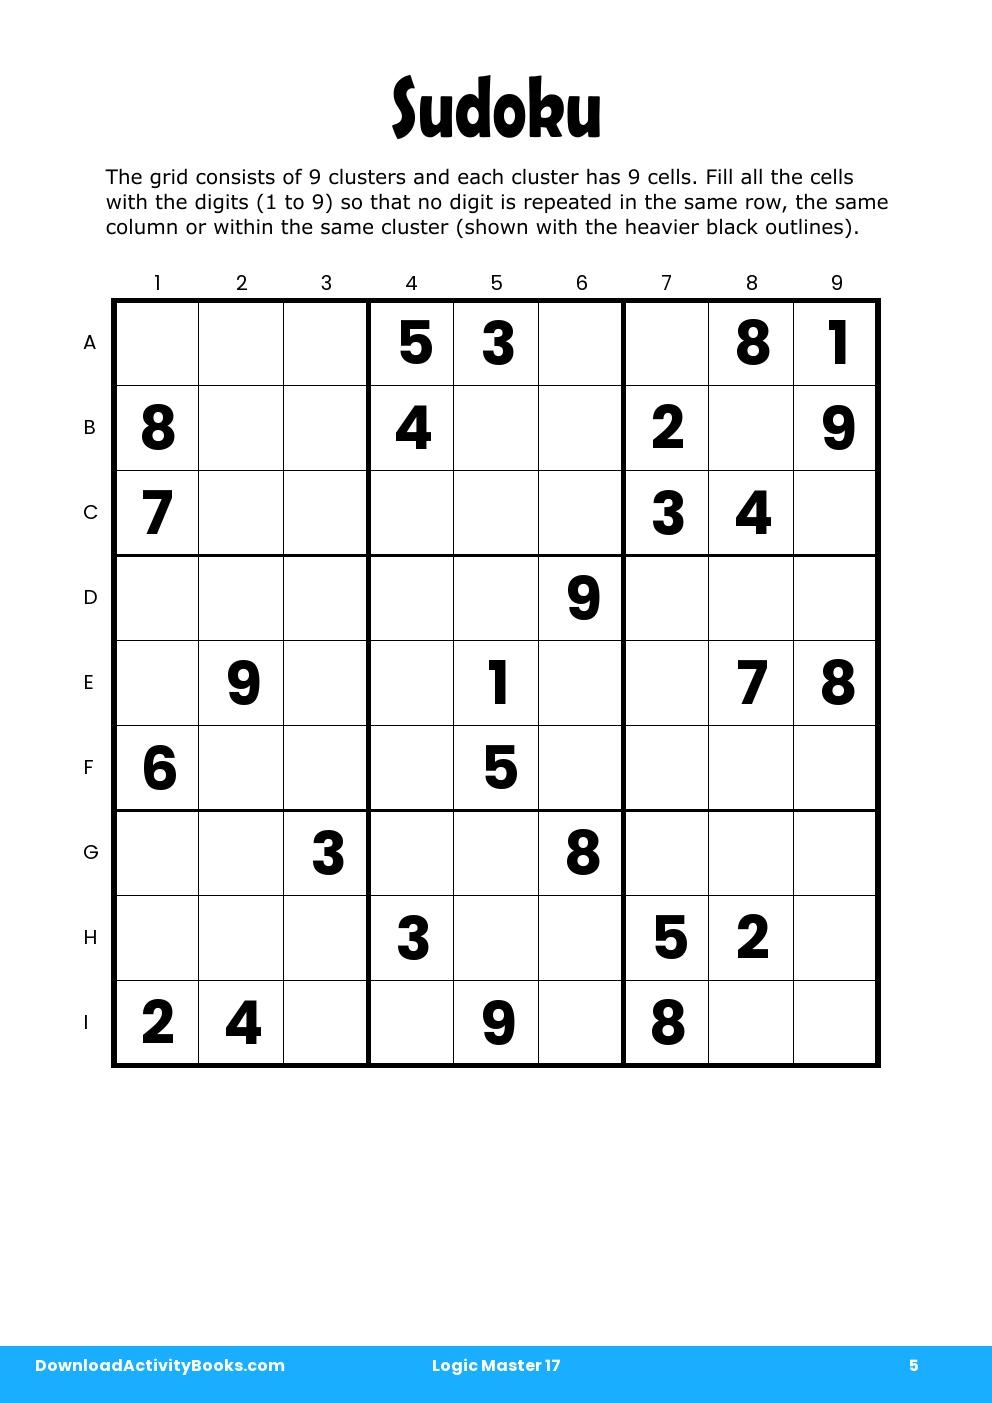 Sudoku in Logic Master 17